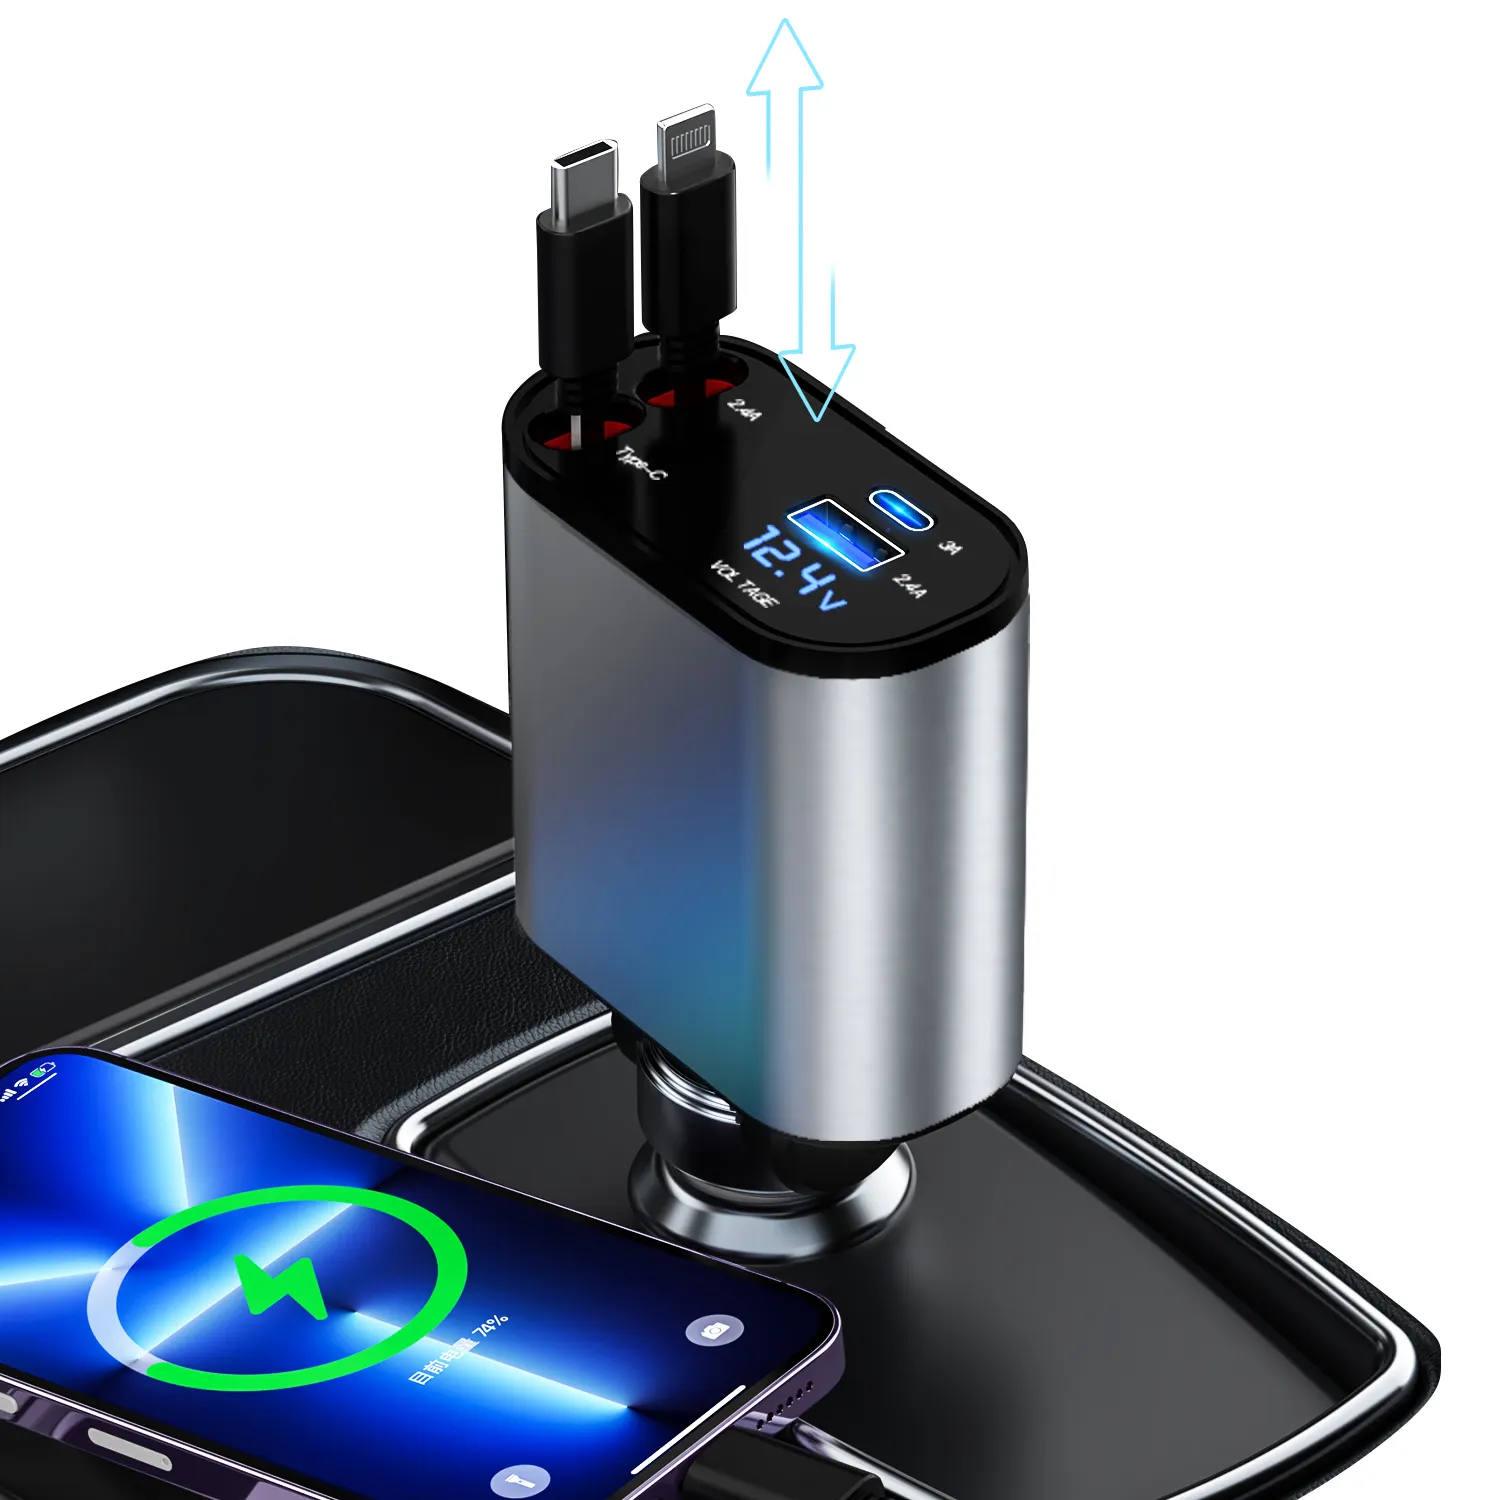 नया निर्माता डायरेक्ट सप्लाई रिट्रैक्टेबल कार चार्जर 60W 4 इन 1 सुपर फास्ट चार्ज कार फोन चार्जर